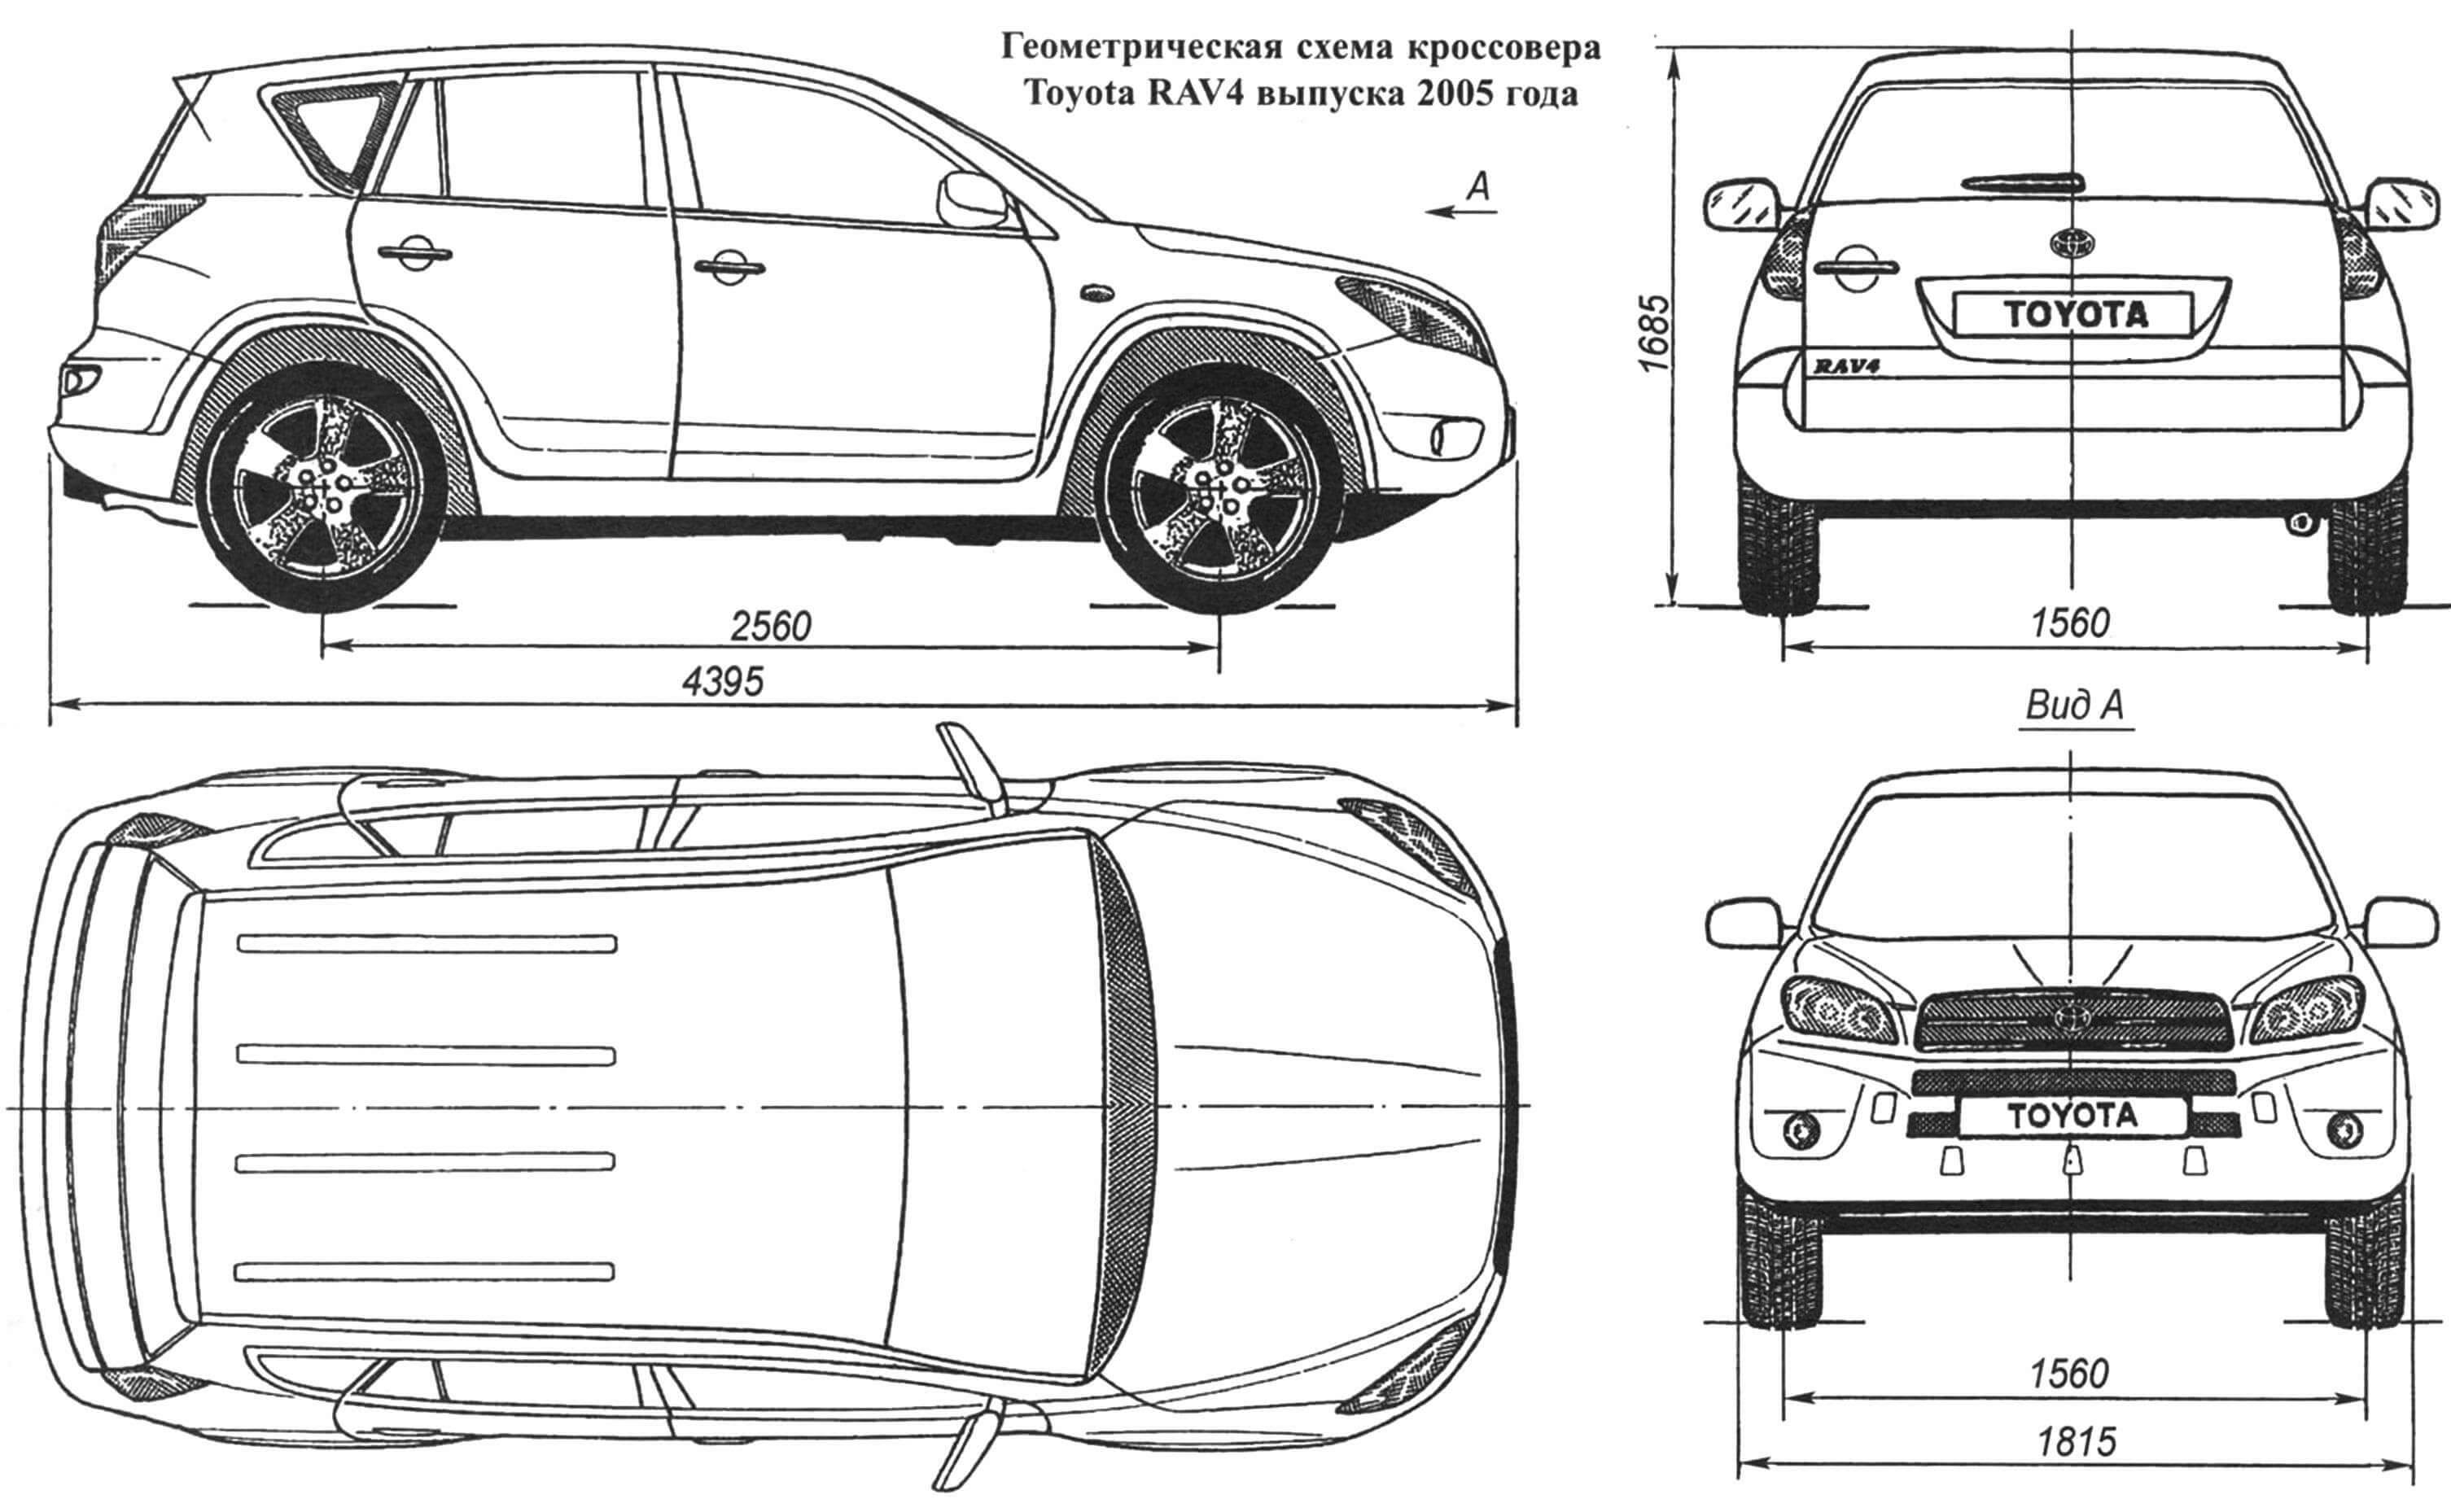 Геометрическая схема кроссовера Toyota RAV4 выпуска 2005 года